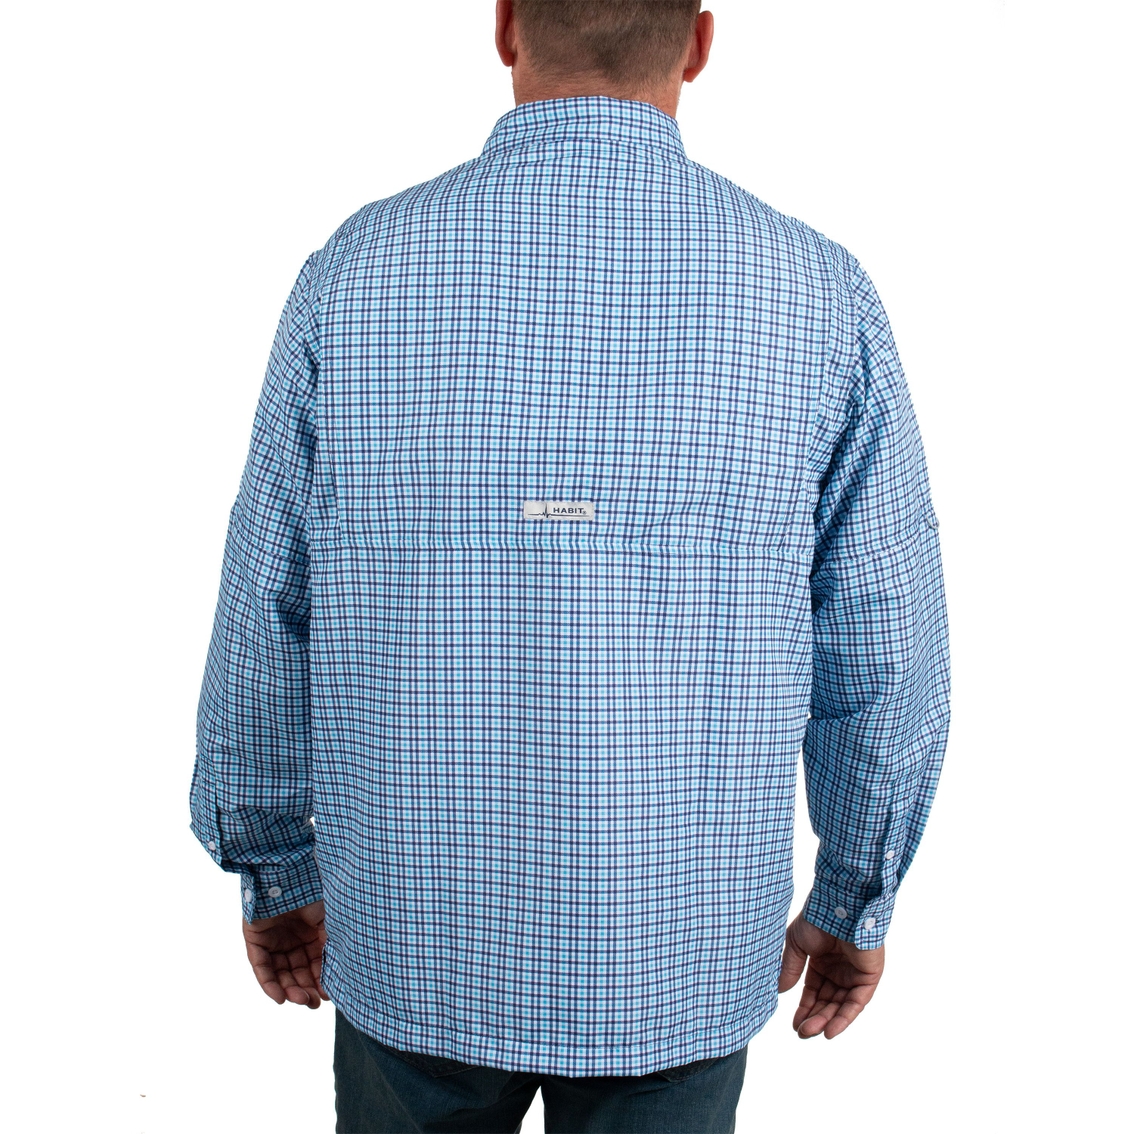 HABIT Men’s Fourche Mountain Short Sleeve River Guide Fishing Shirt - UPF  40+ UV